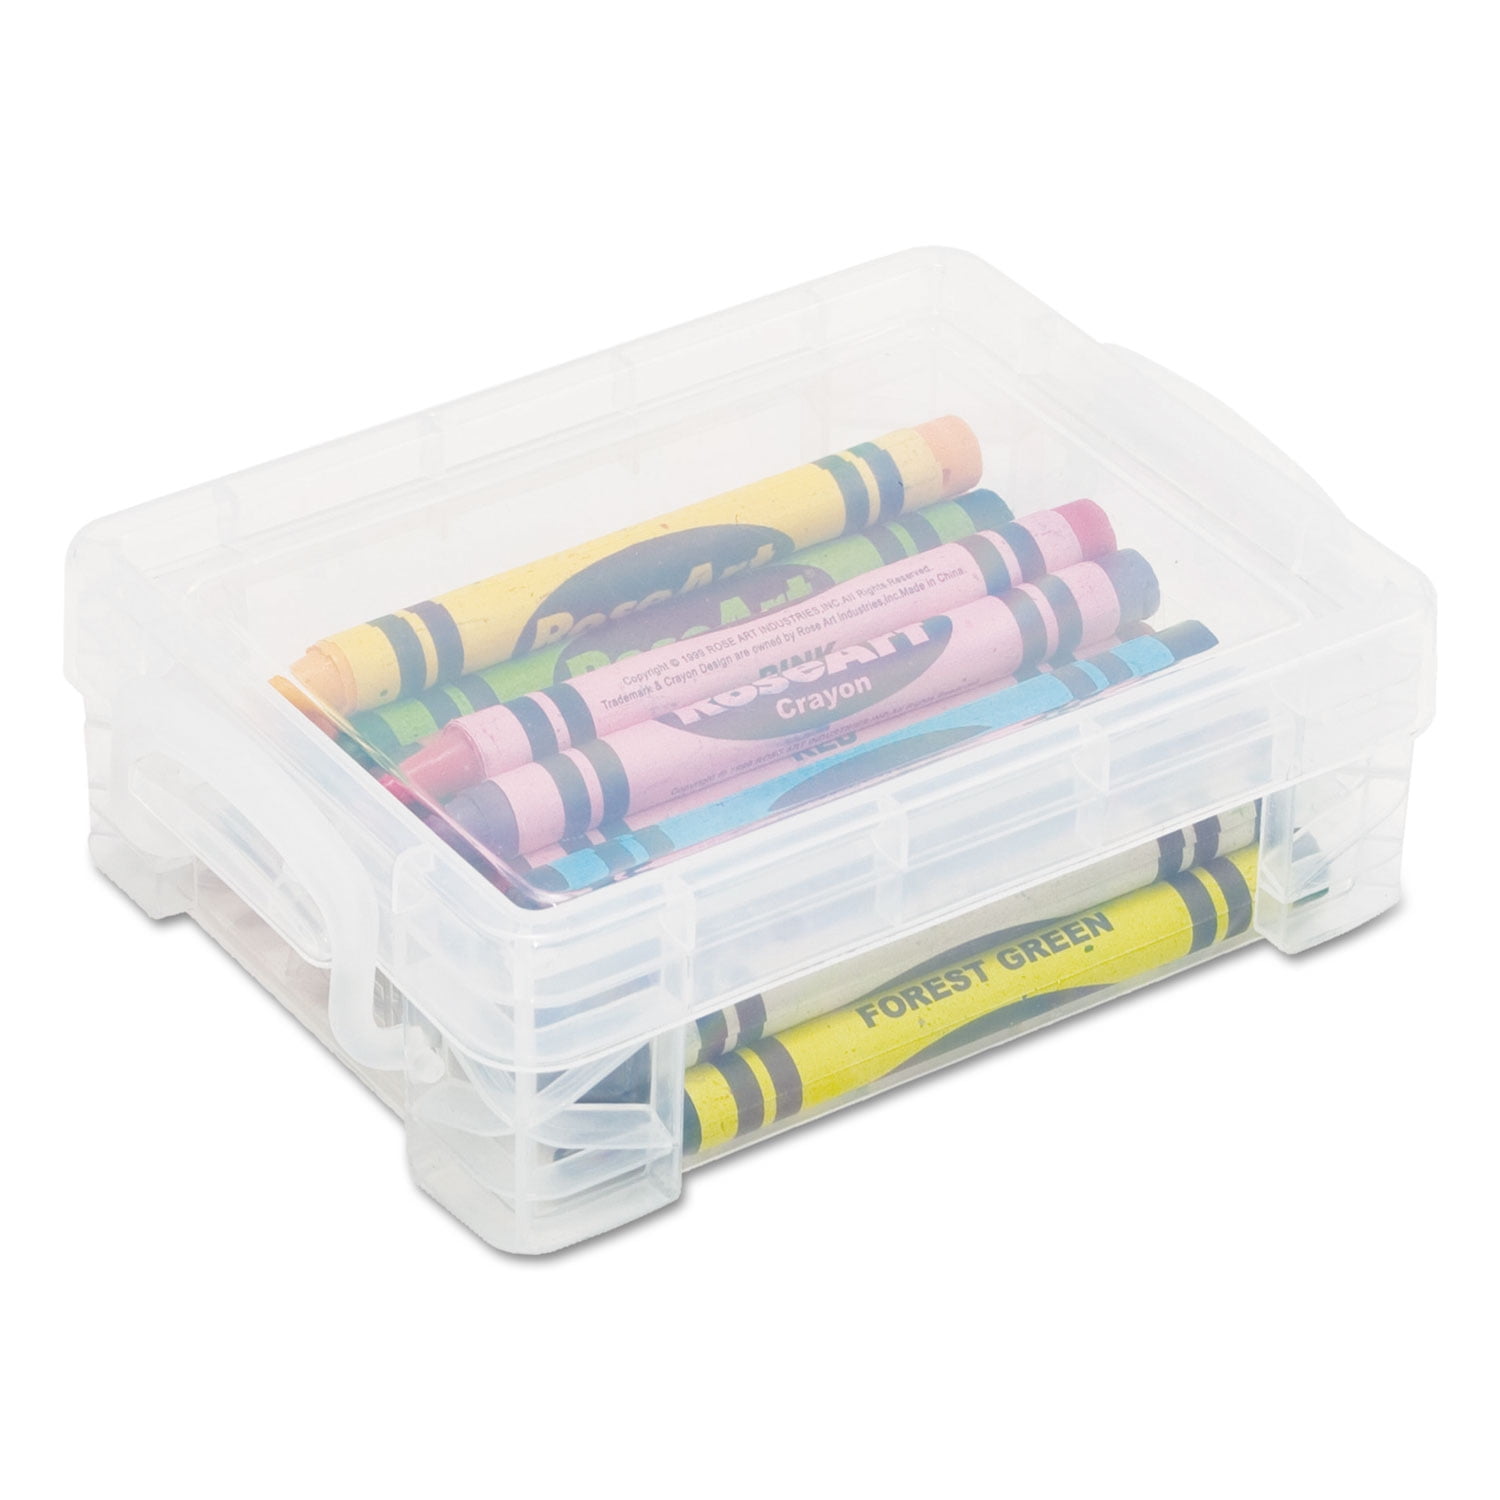 Super Stackers Crayon Box, Assorted Colors - Shop Pencil Cases at H-E-B